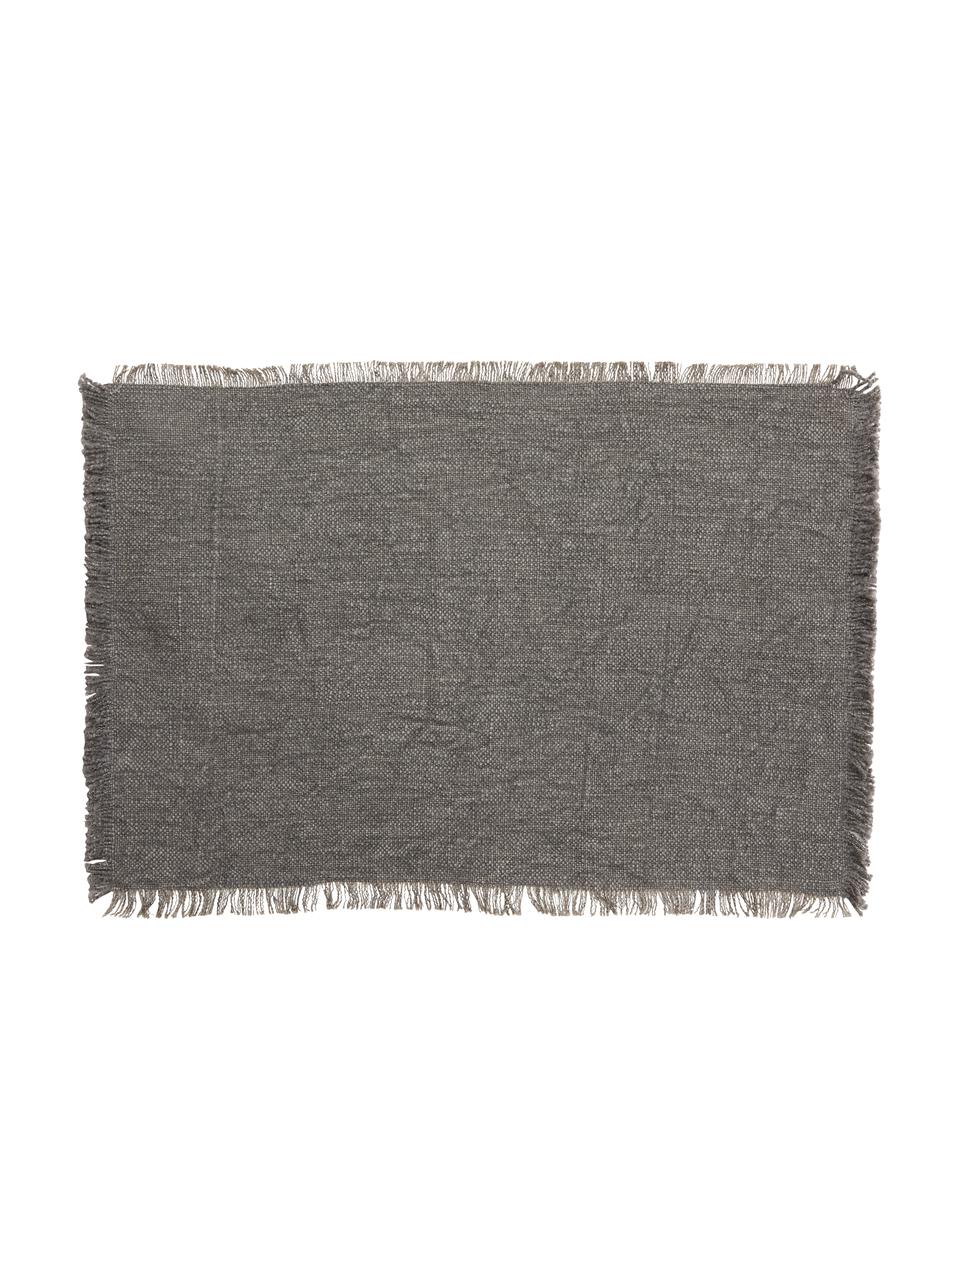 Podkładka z bawełny Atria, 2 szt., 100% bawełna, Szary, S 33 x D 48 cm